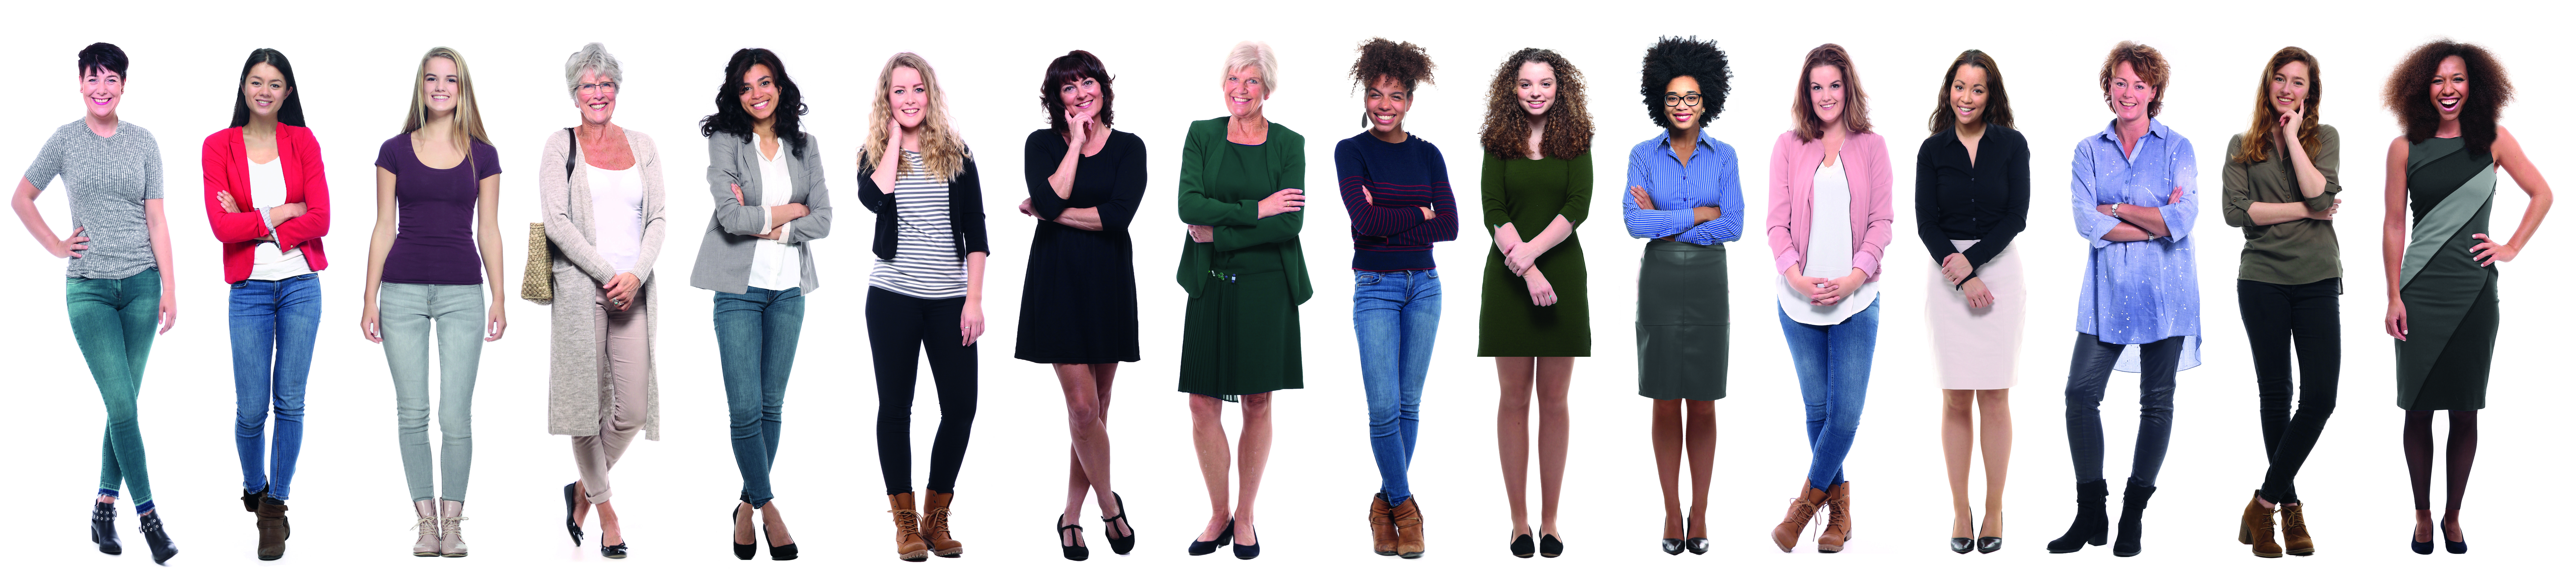 Mehrere Frauen unterschiedlichen Alters stehen in einer Reihe nebeneinander